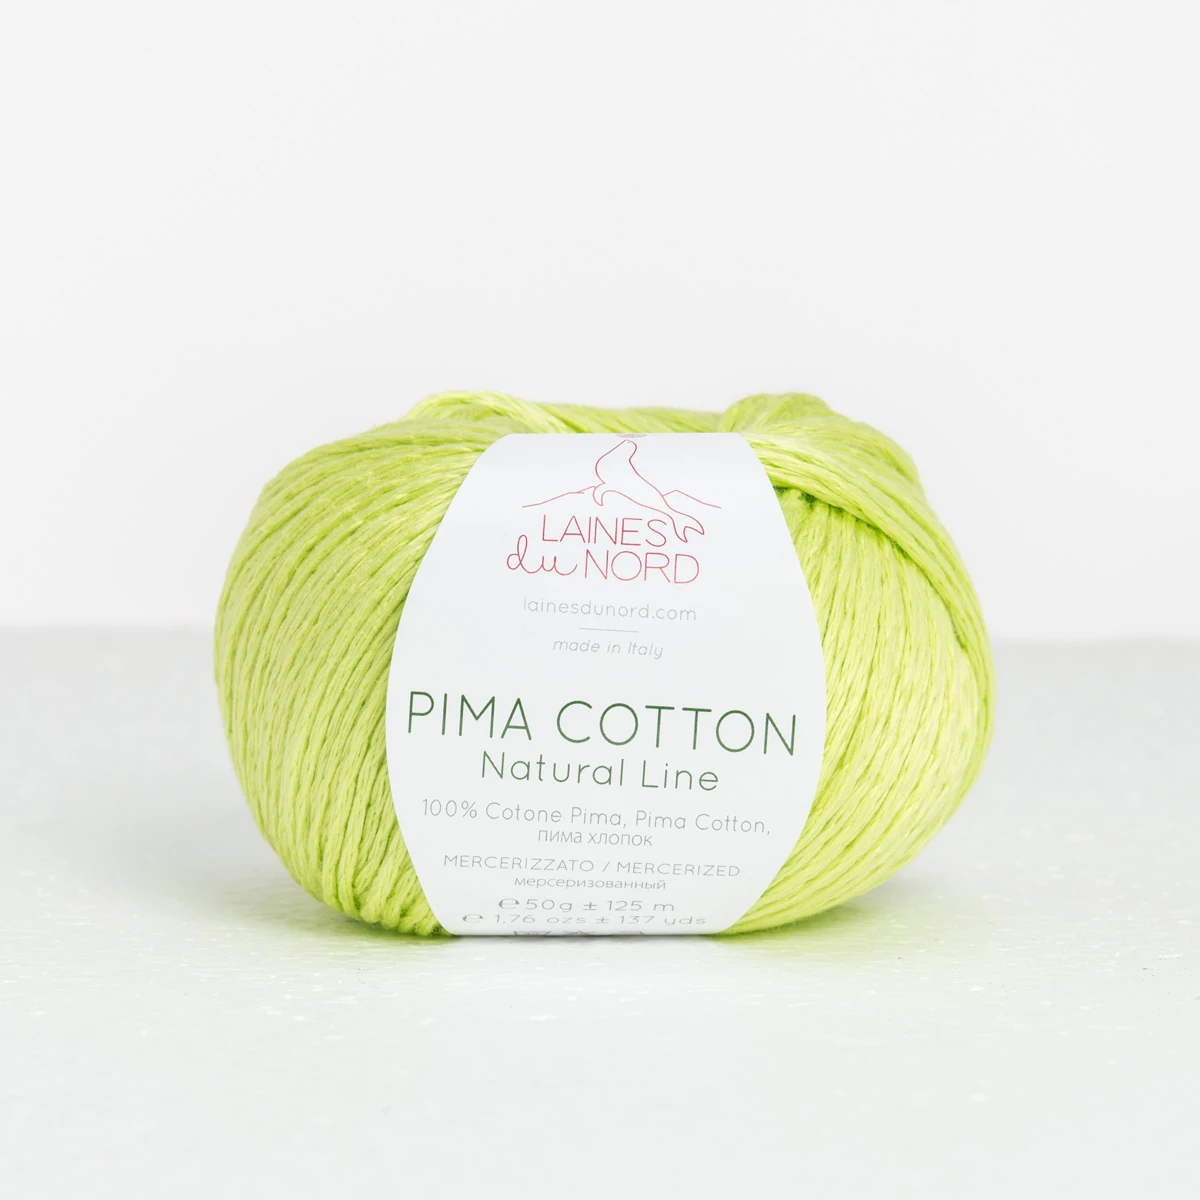 besøg vrede lejr Buy Pima cotton, find nearest shop here.